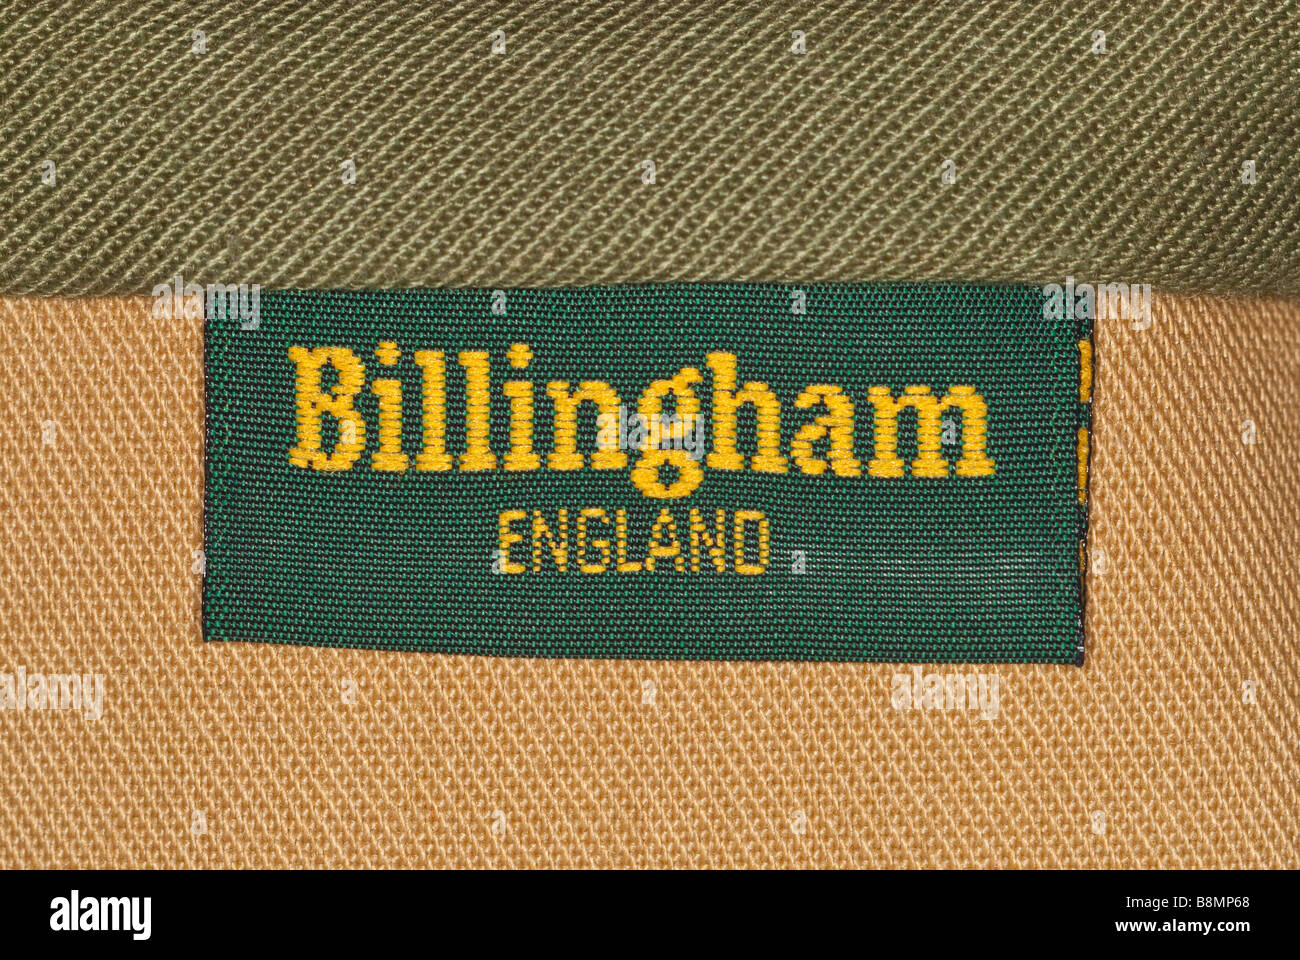 Una chiusura di un Billingham fotografia fotocamera borsa fatta in Inghilterra che mostra il logo Foto Stock